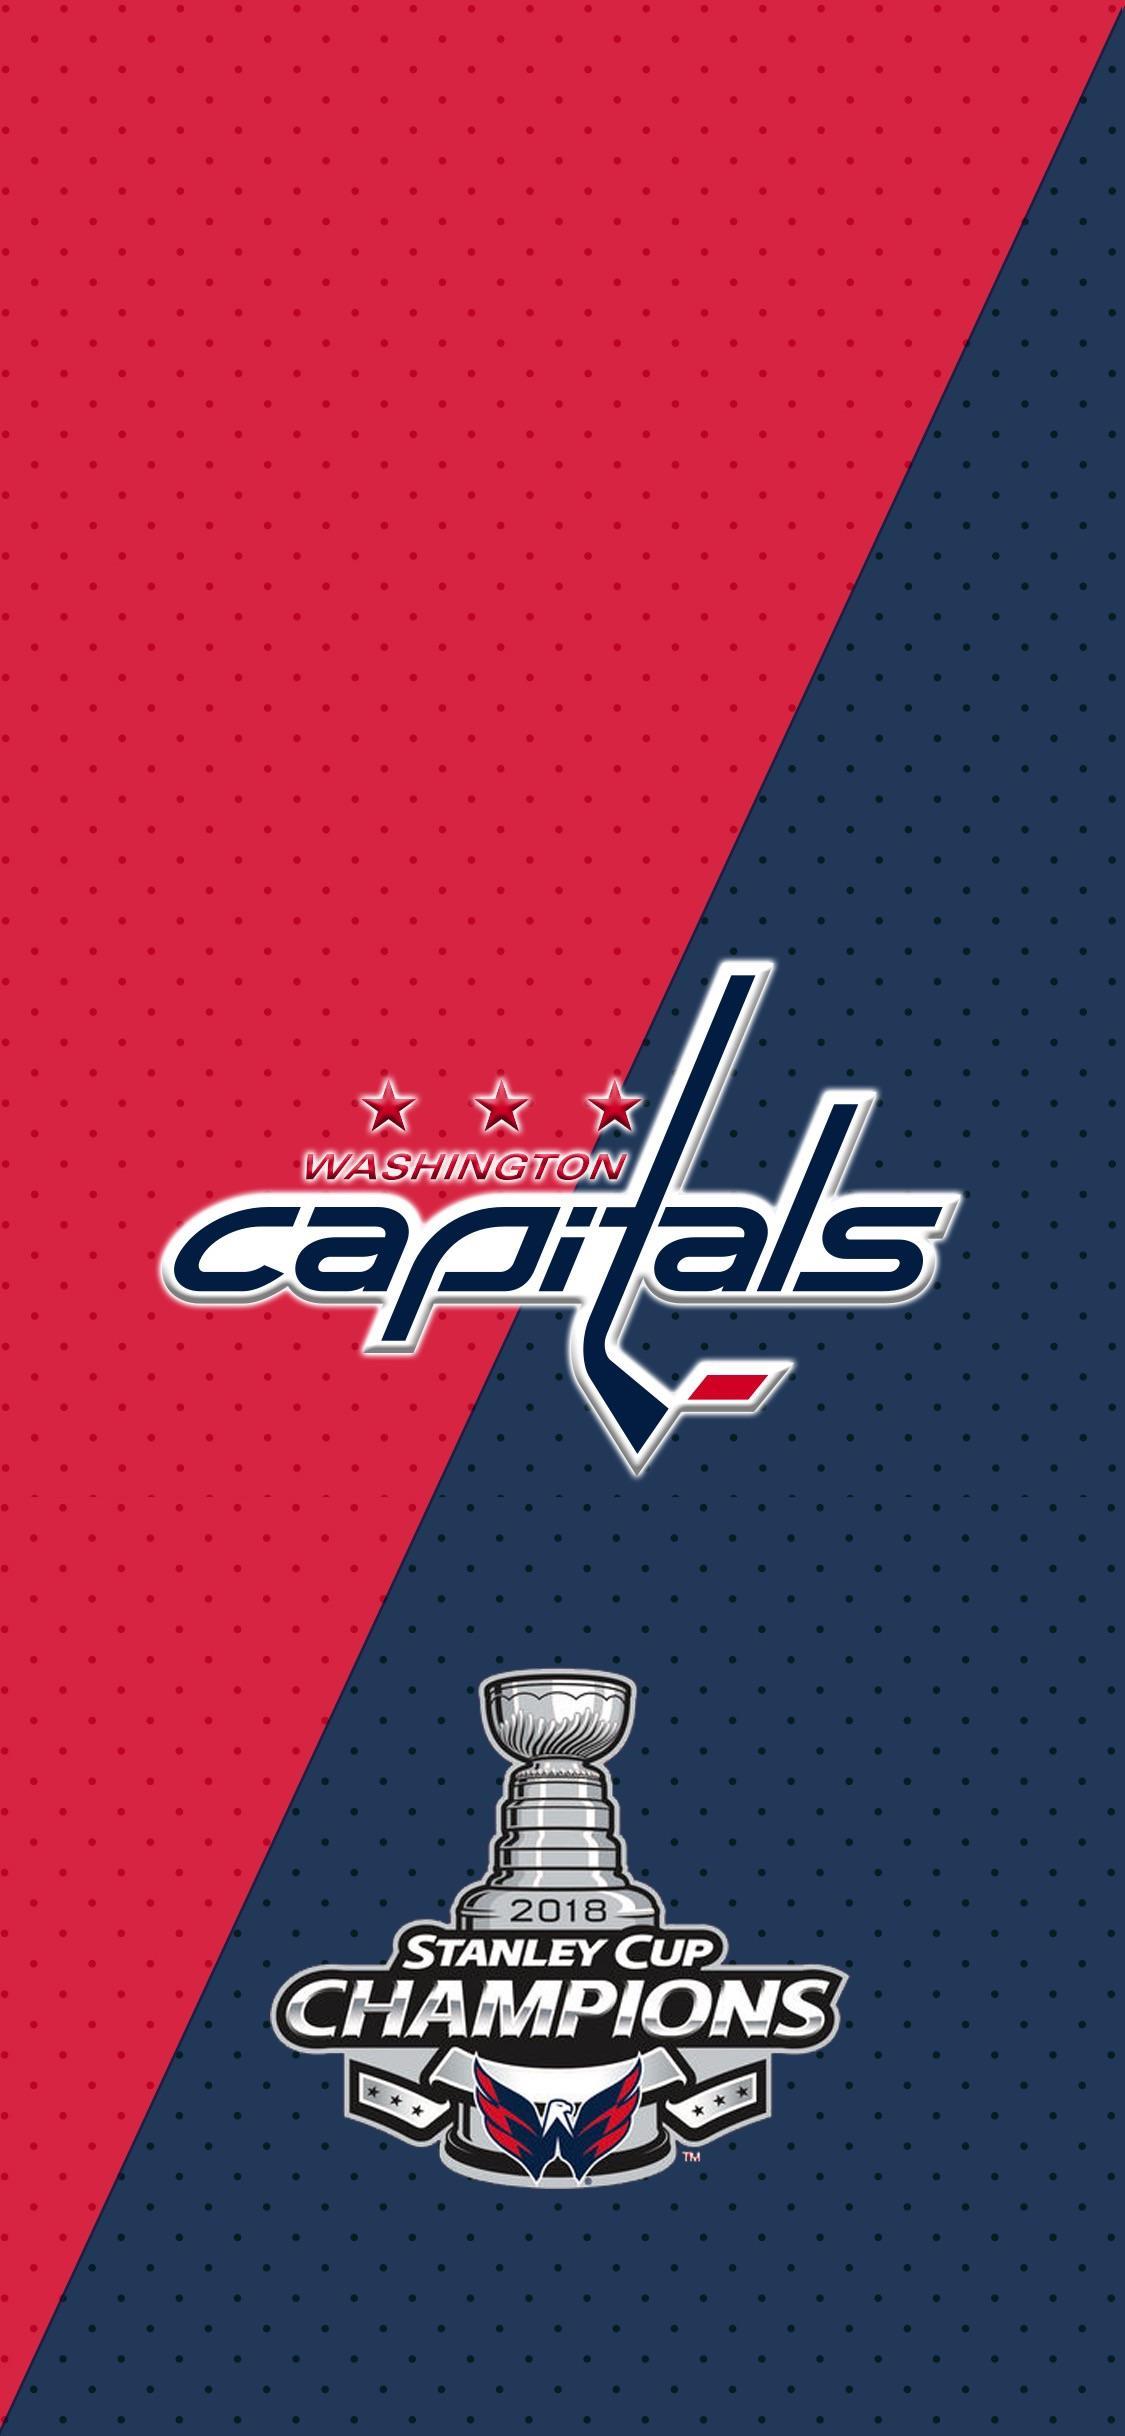 Washington Capitals (NHL) iPhone X/XS/XR Lock Screen Wallpaper